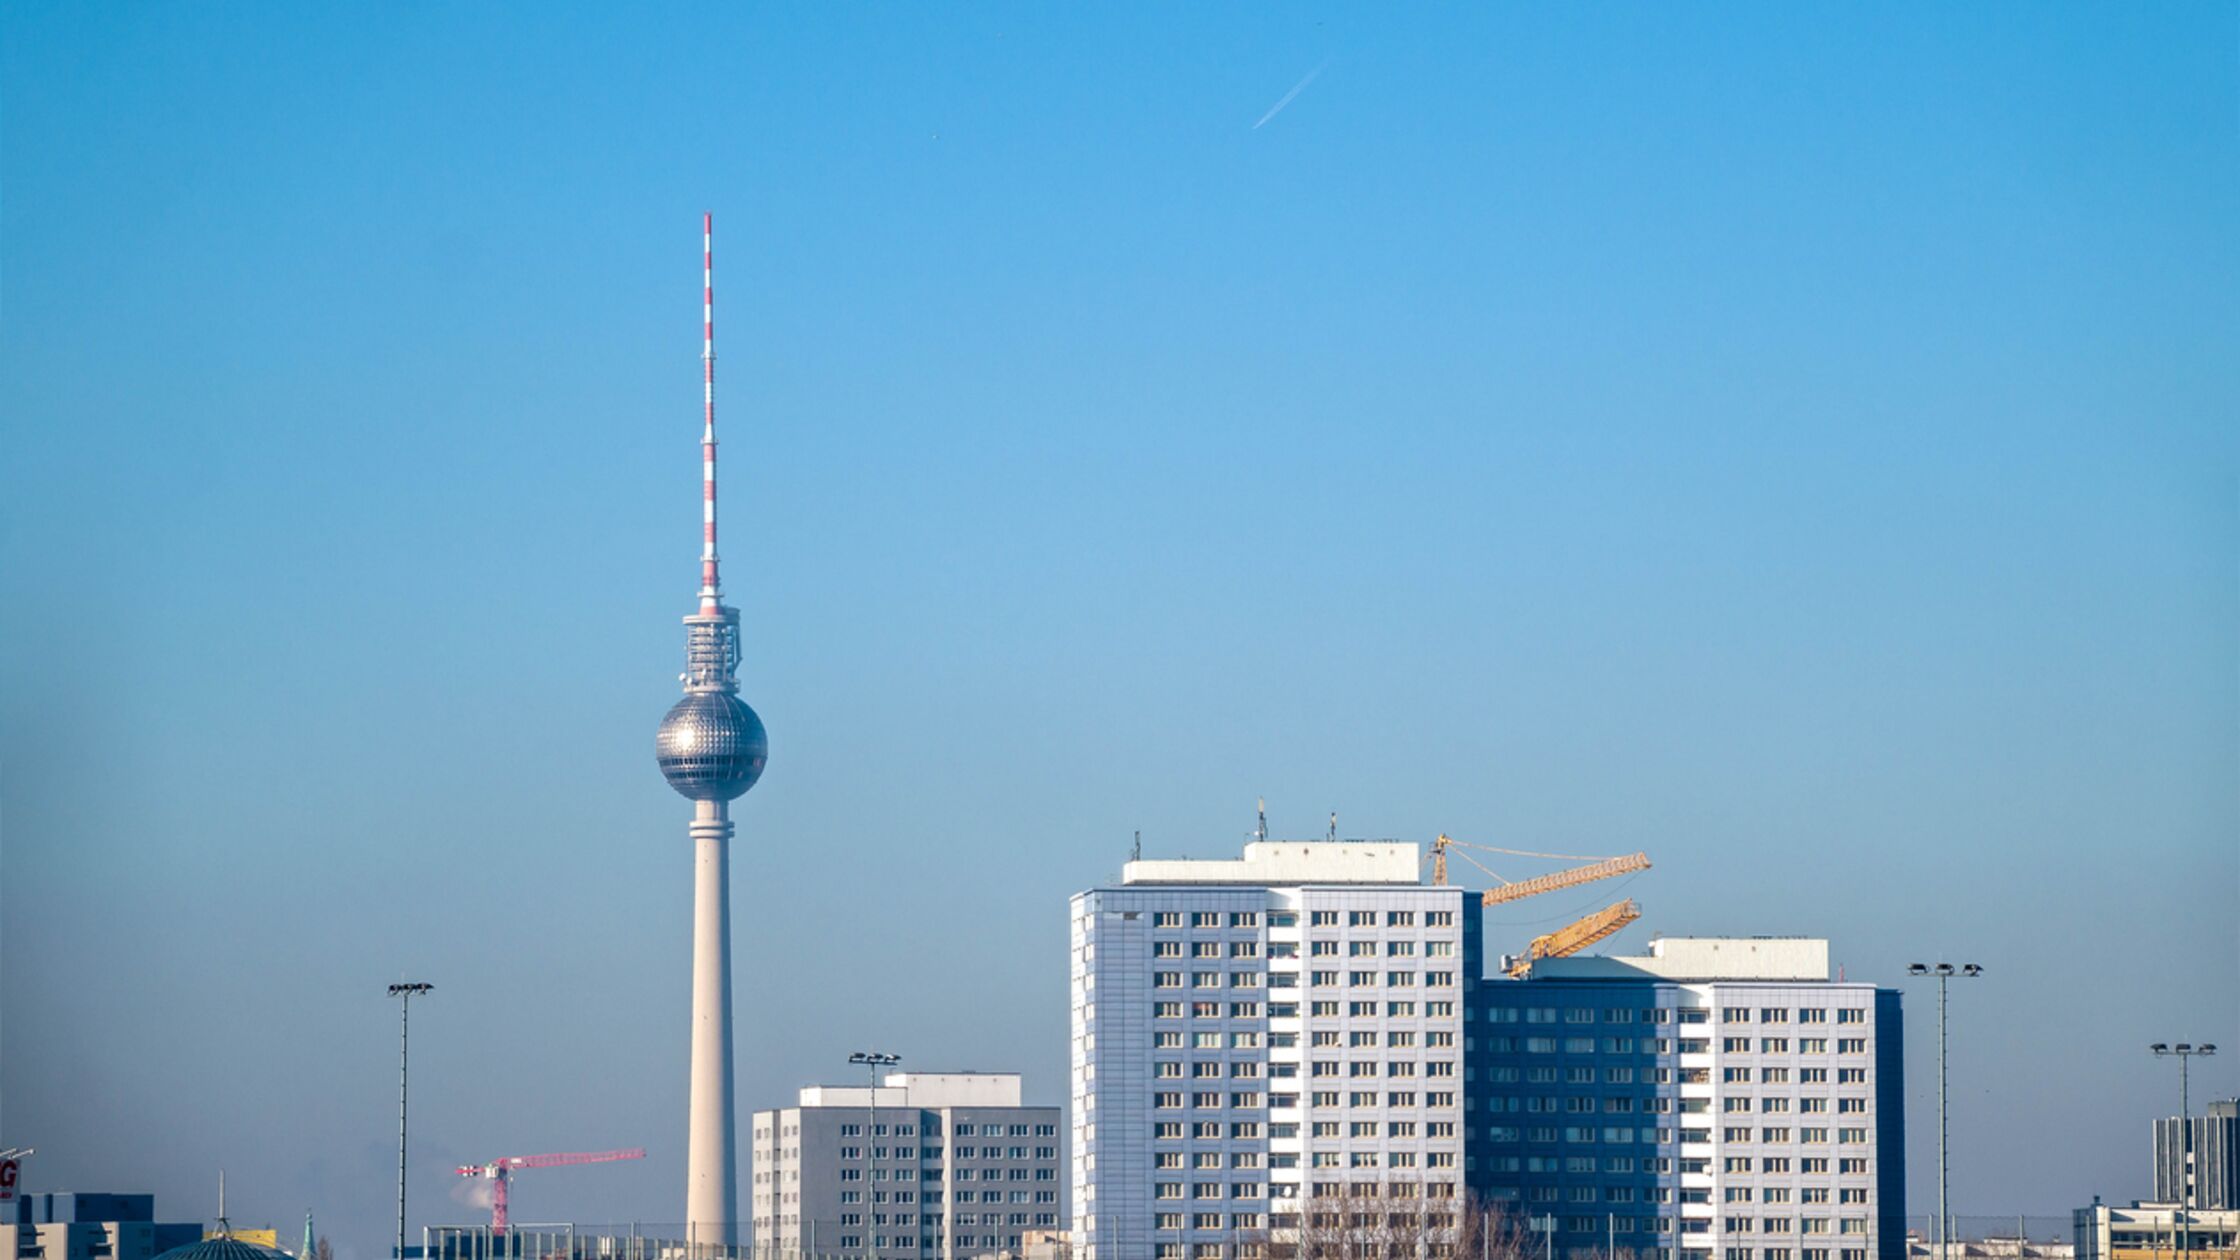 Mietendeckel in Berlin: Was bedeutet das Gesetz für die Mietpreise?